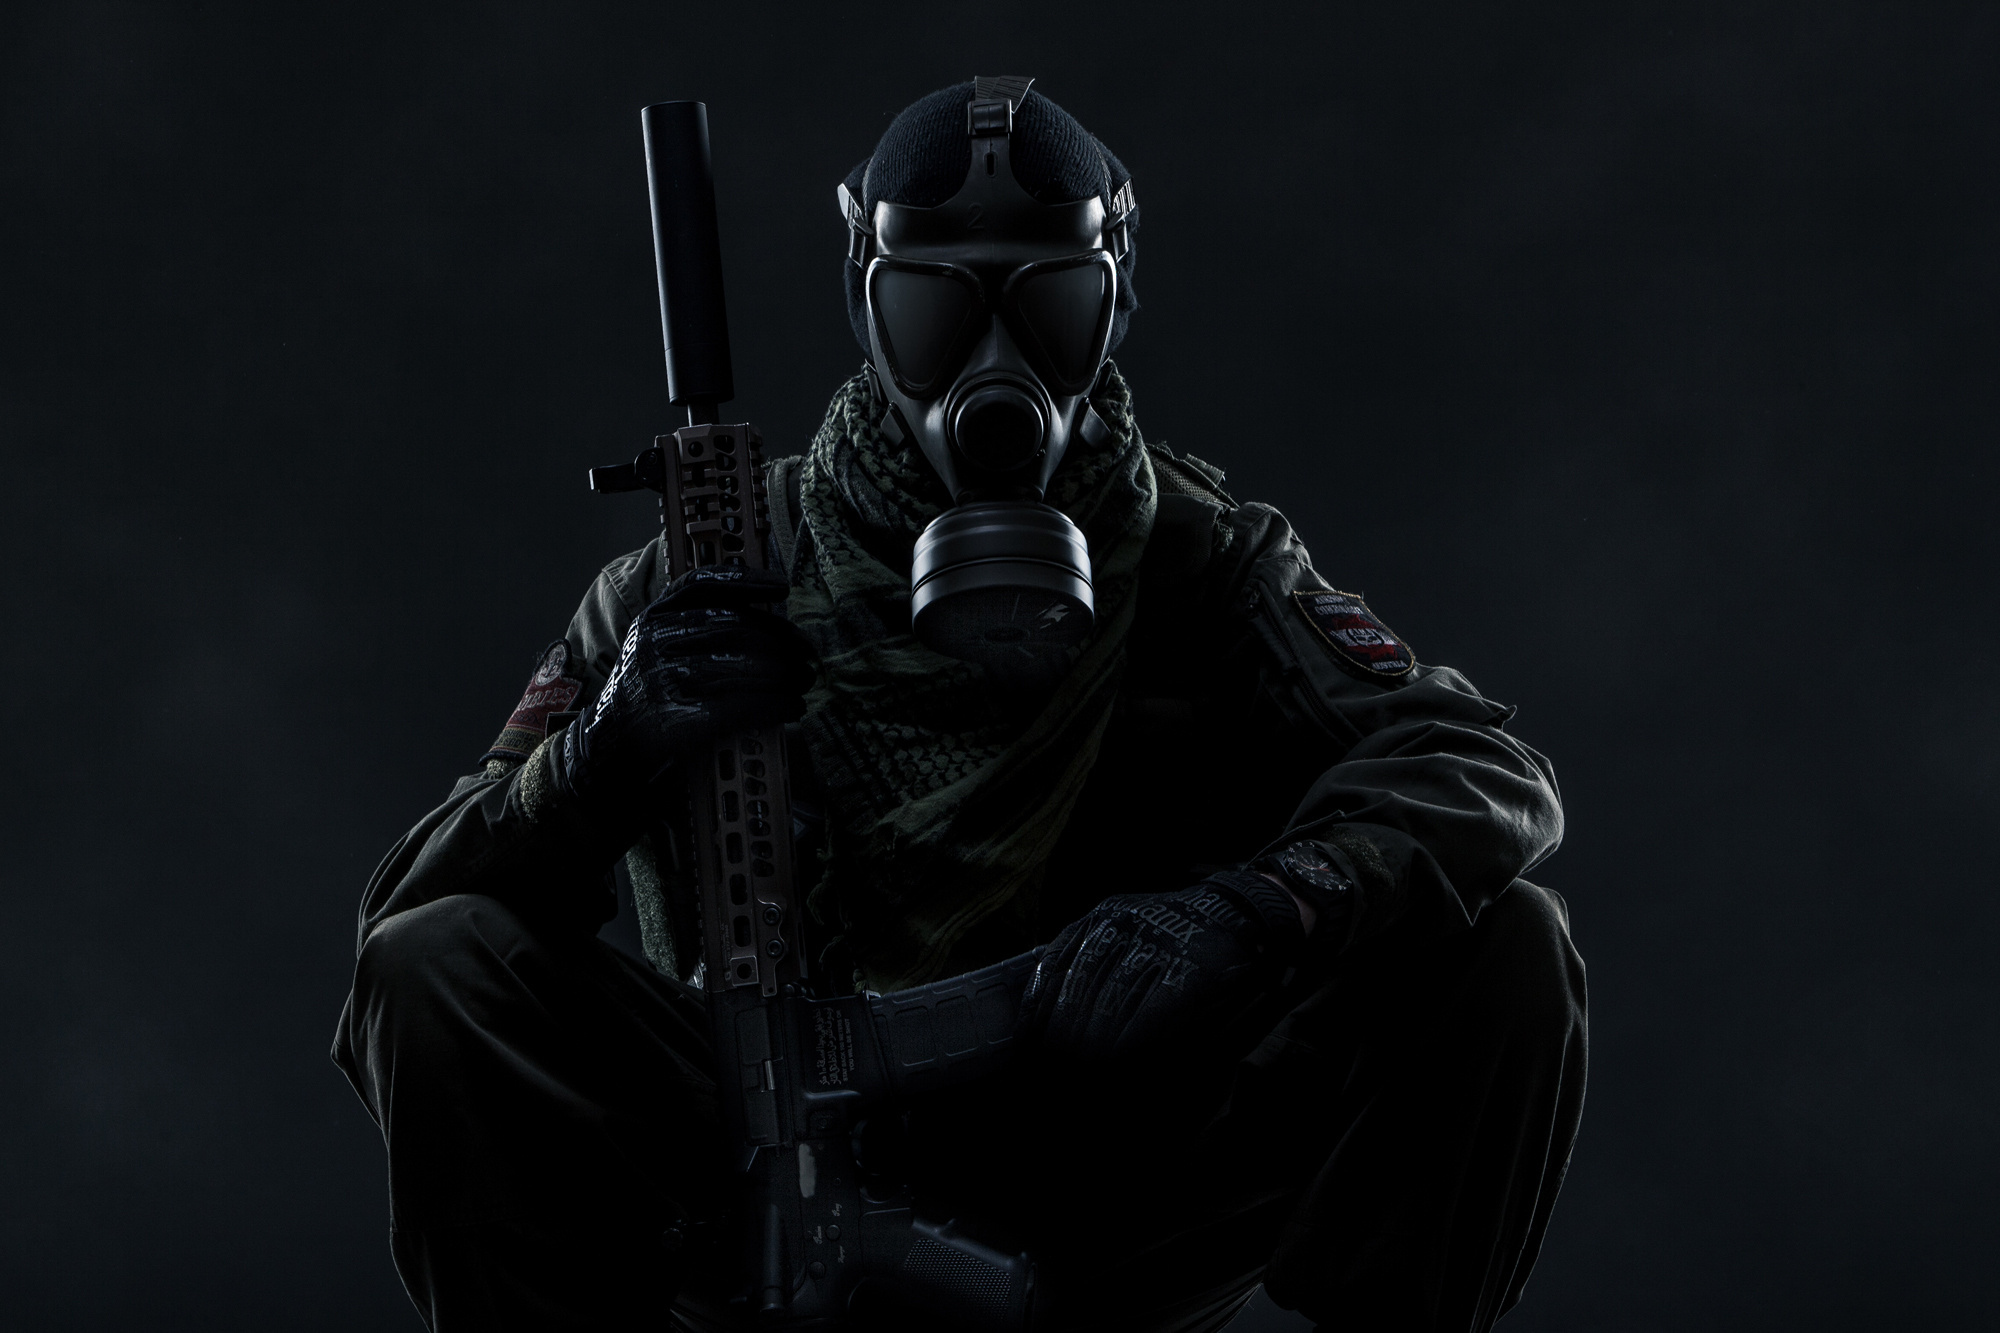 Soldier from Tom Clancys Ghost Recon Wildlands on a dark background